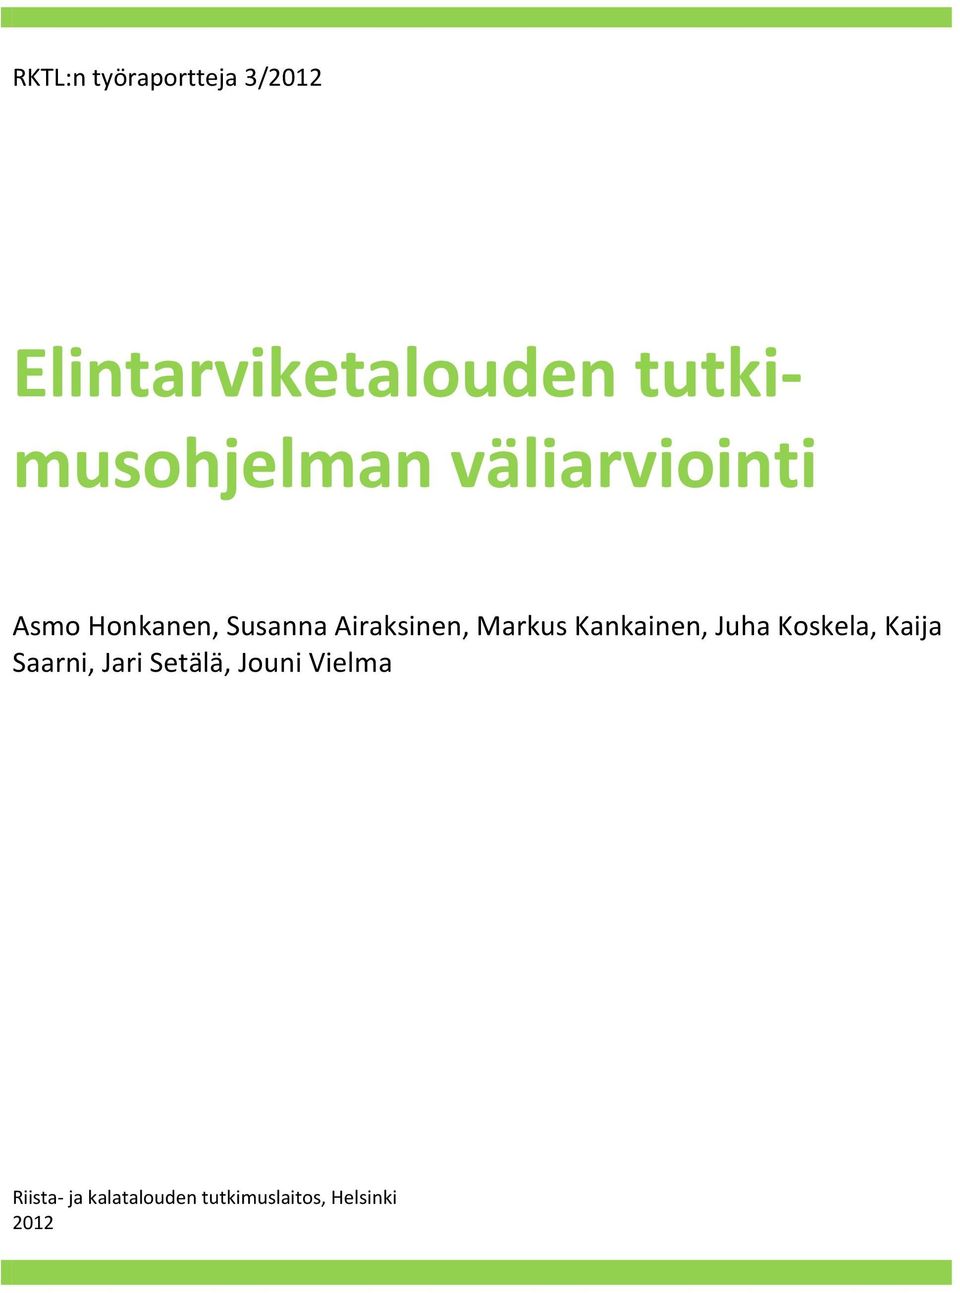 Airaksinen, Markus Kankainen, Juha Koskela, Kaija Saarni,